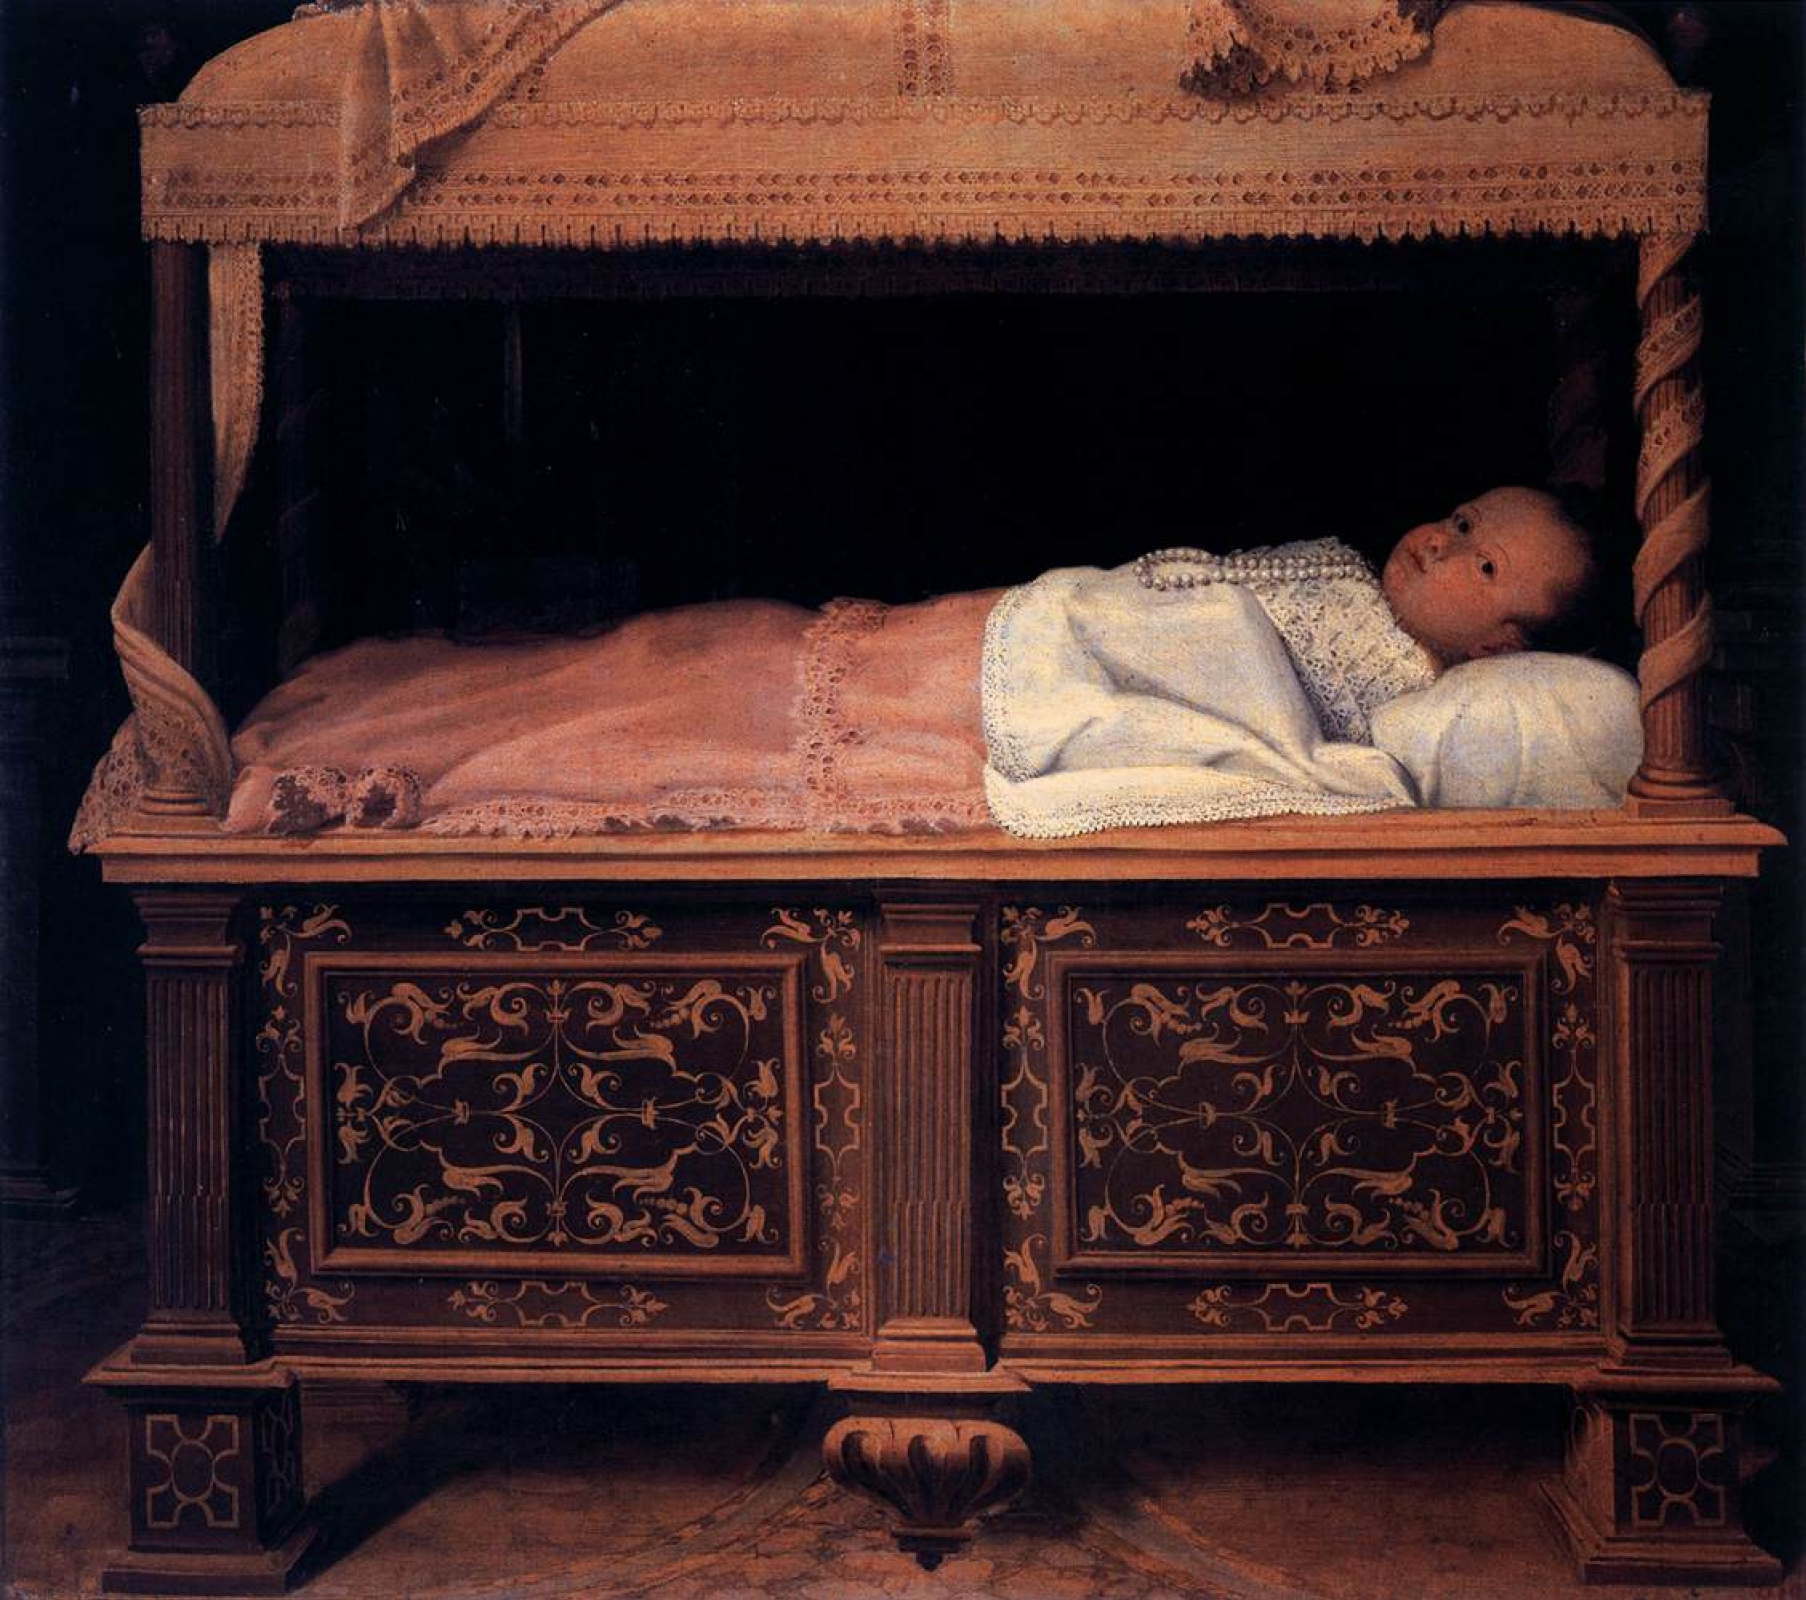 Теппо колыбель скорби. Лавиния фонтана (1552-1614). Лавиния фонтана Мадонна. Младенец в колыбельке. Детская люлька для новорожденных в средневековье.